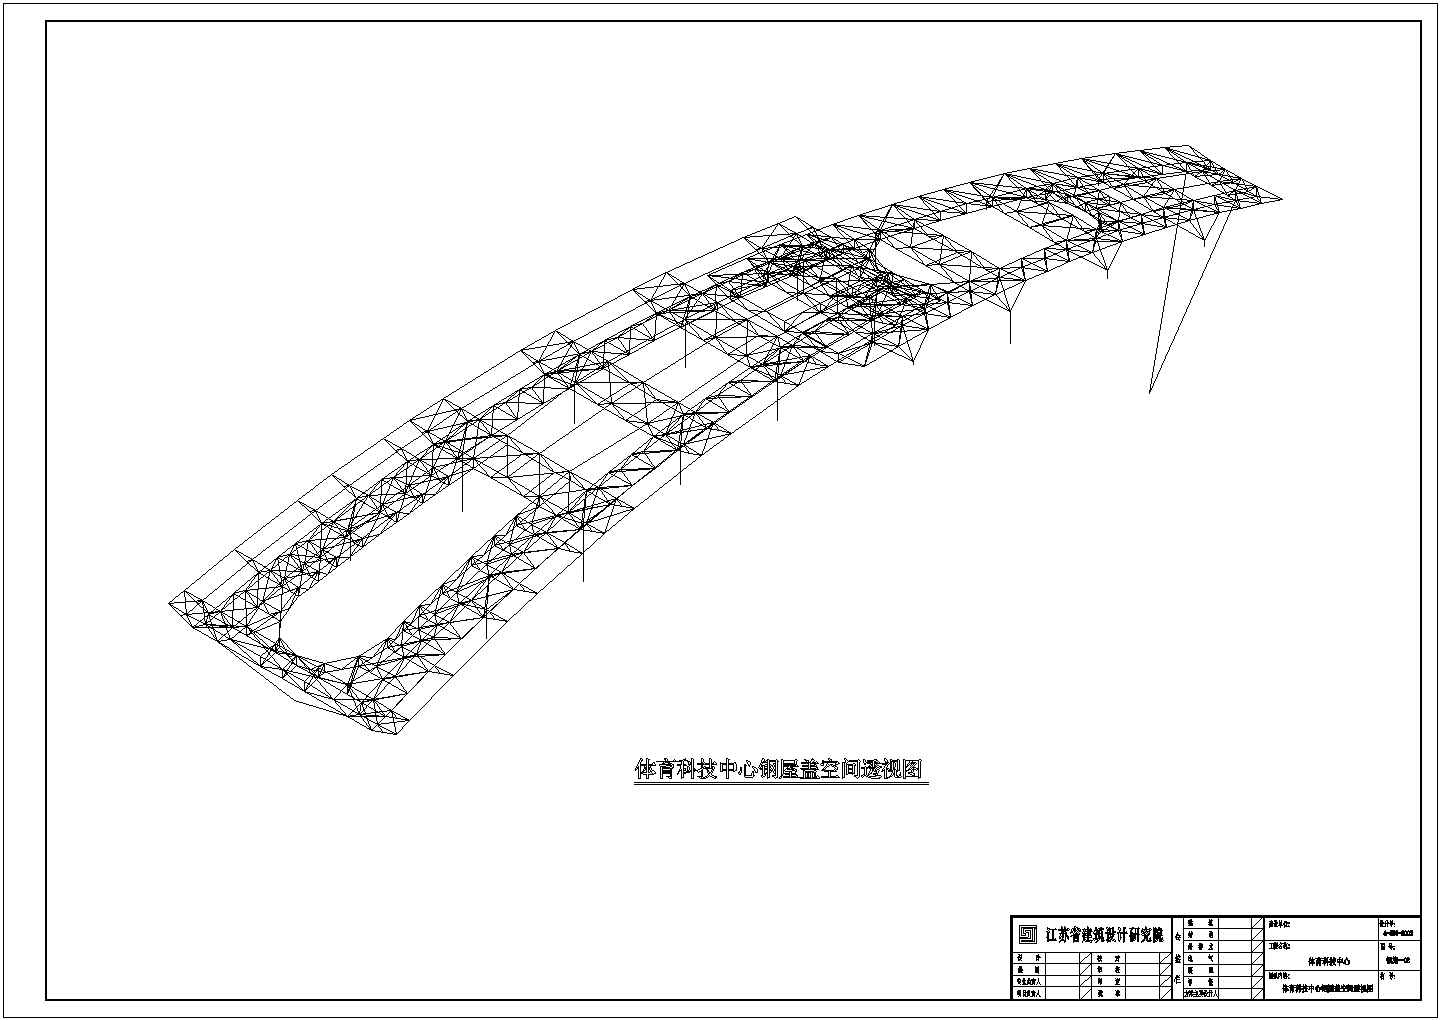 某体育科技中心钢结构屋盖结构设计施工图